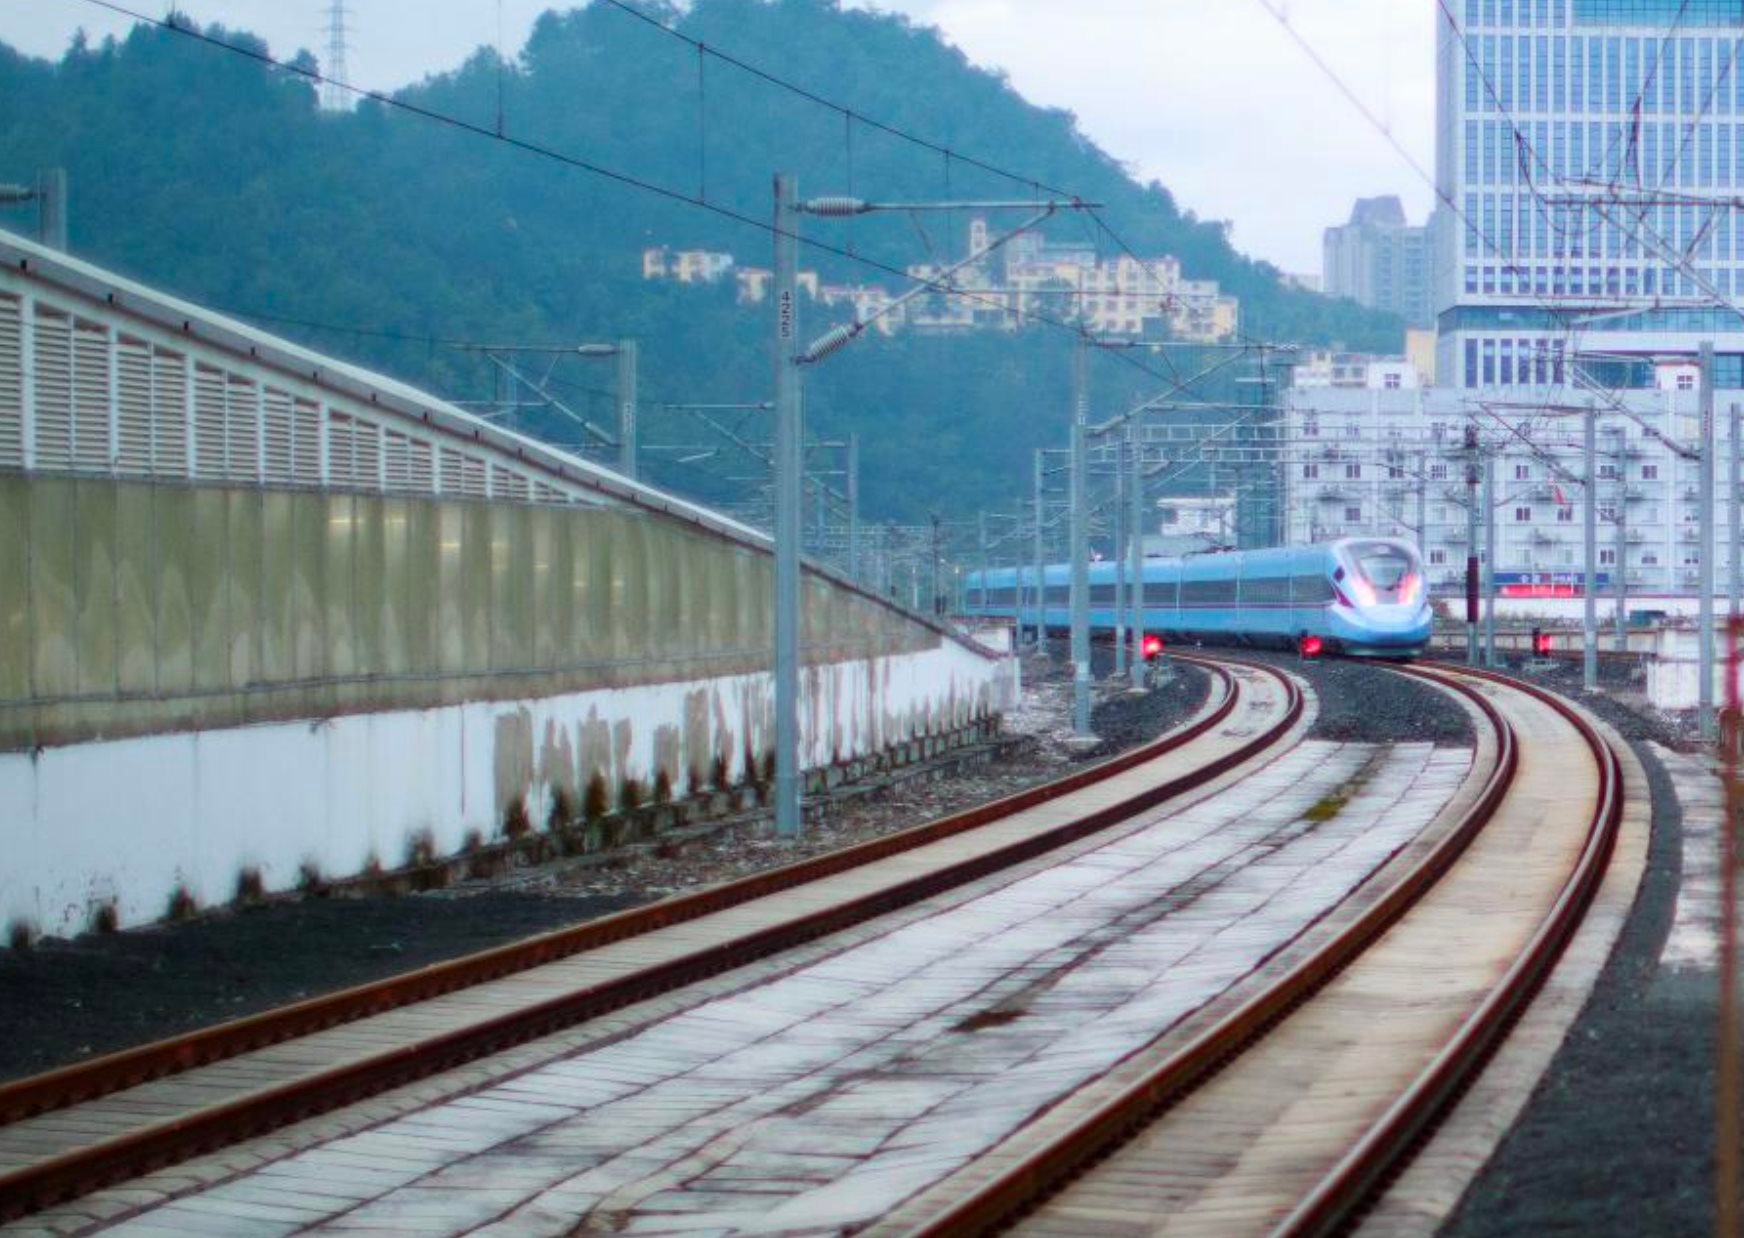 Trung Quốc khiến thế giới kinh ngạc với tuyến đường sắt cao tốc xuyên núi, vượt đèo: Đi 'như bay' với 350 km/h, tổng cộng 62 đường hầm và 86 cây cầu nhưng chỉ mất 6 năm để hoàn thiện - Ảnh 1.